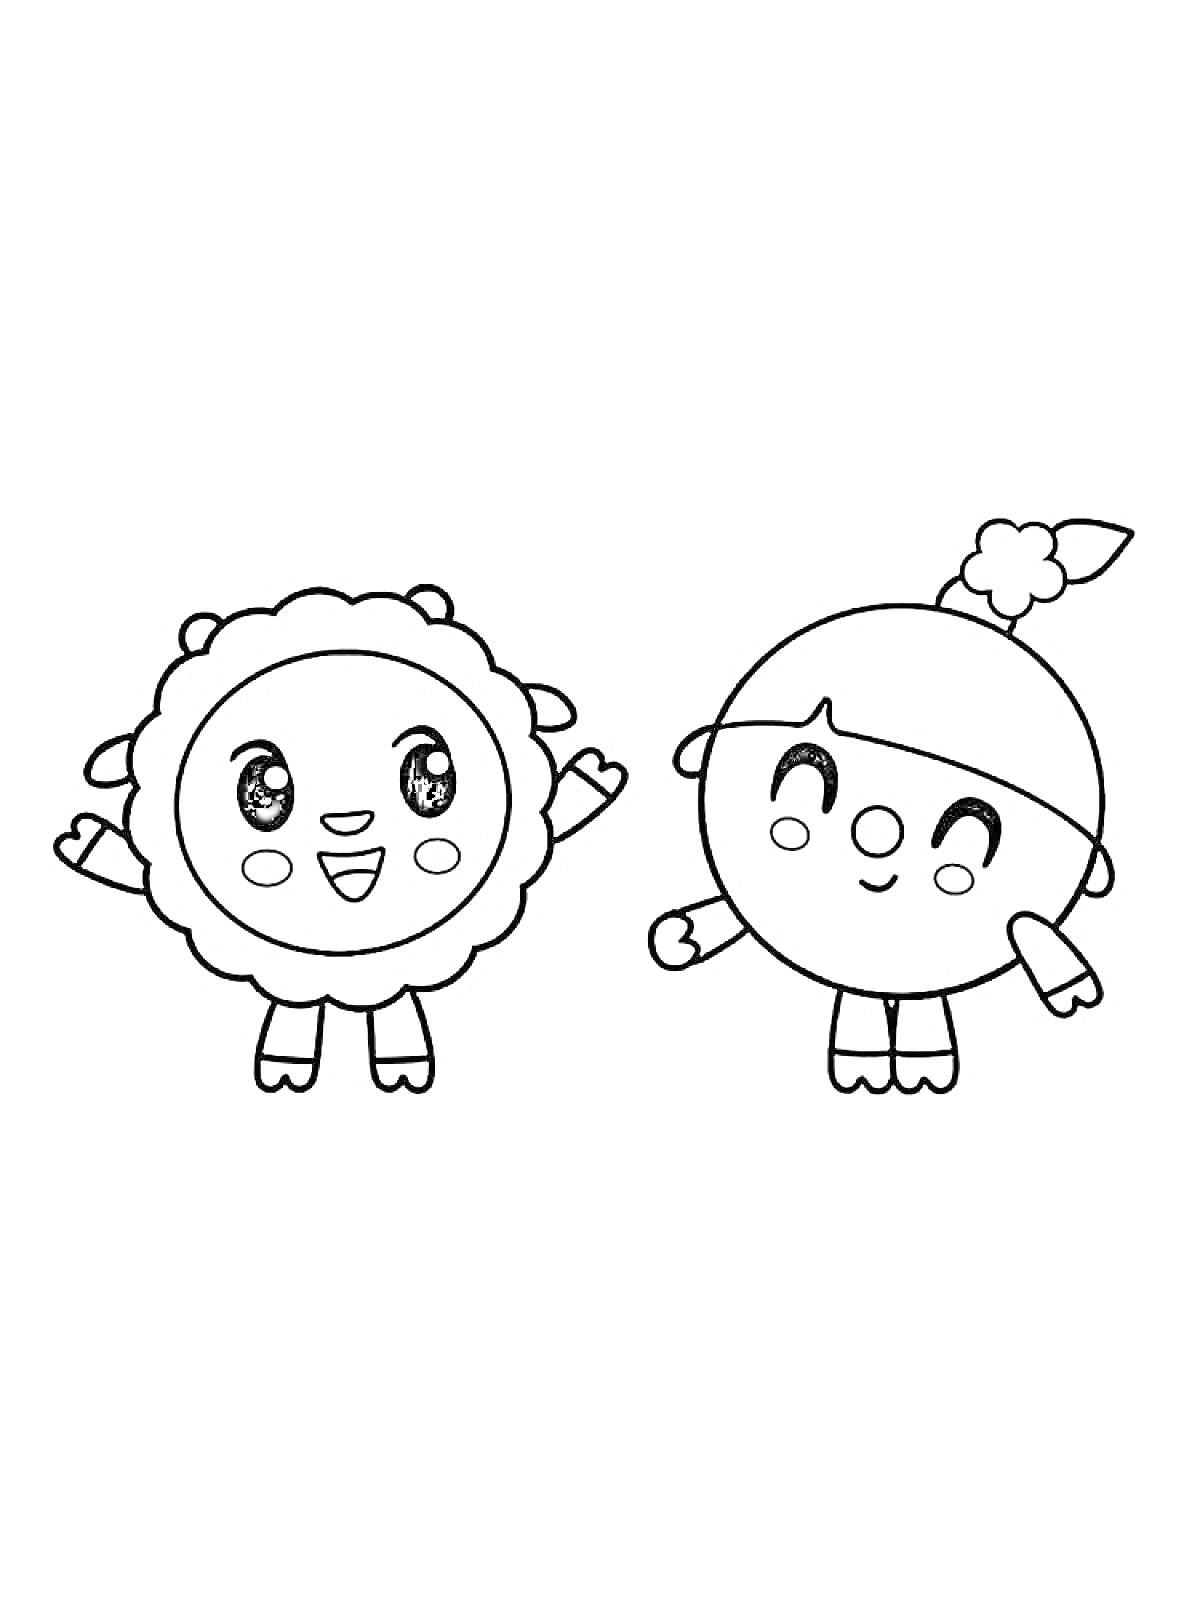 Раскраска Два персонажа Малышарики с поднятыми руками